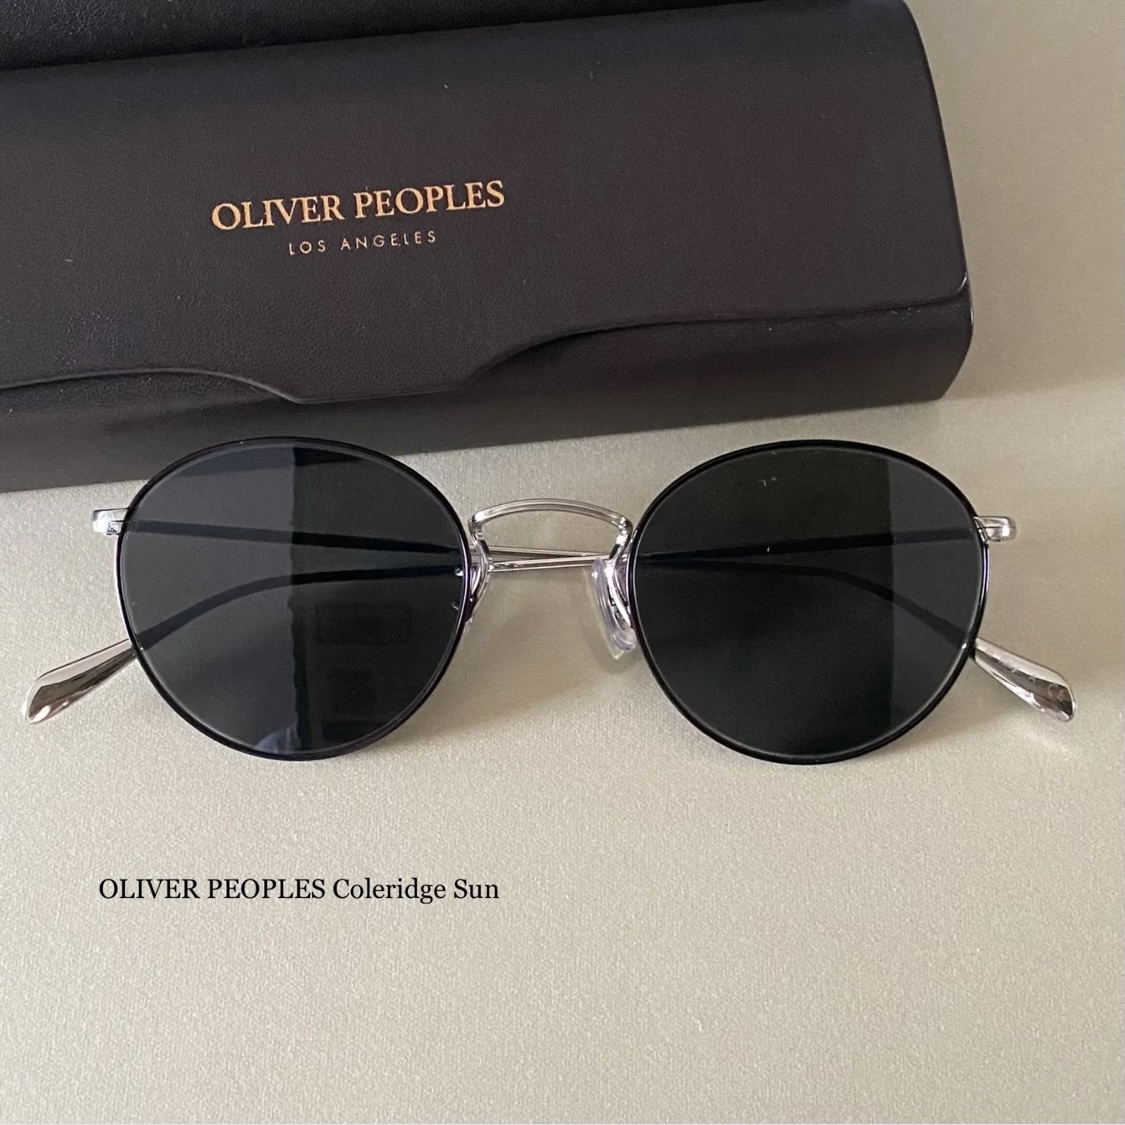 OV317 新品 OLIVER PEOPLES Coleridge Sun サングラス コレリッジ コールリッジ オリバーピープルズ メガネ